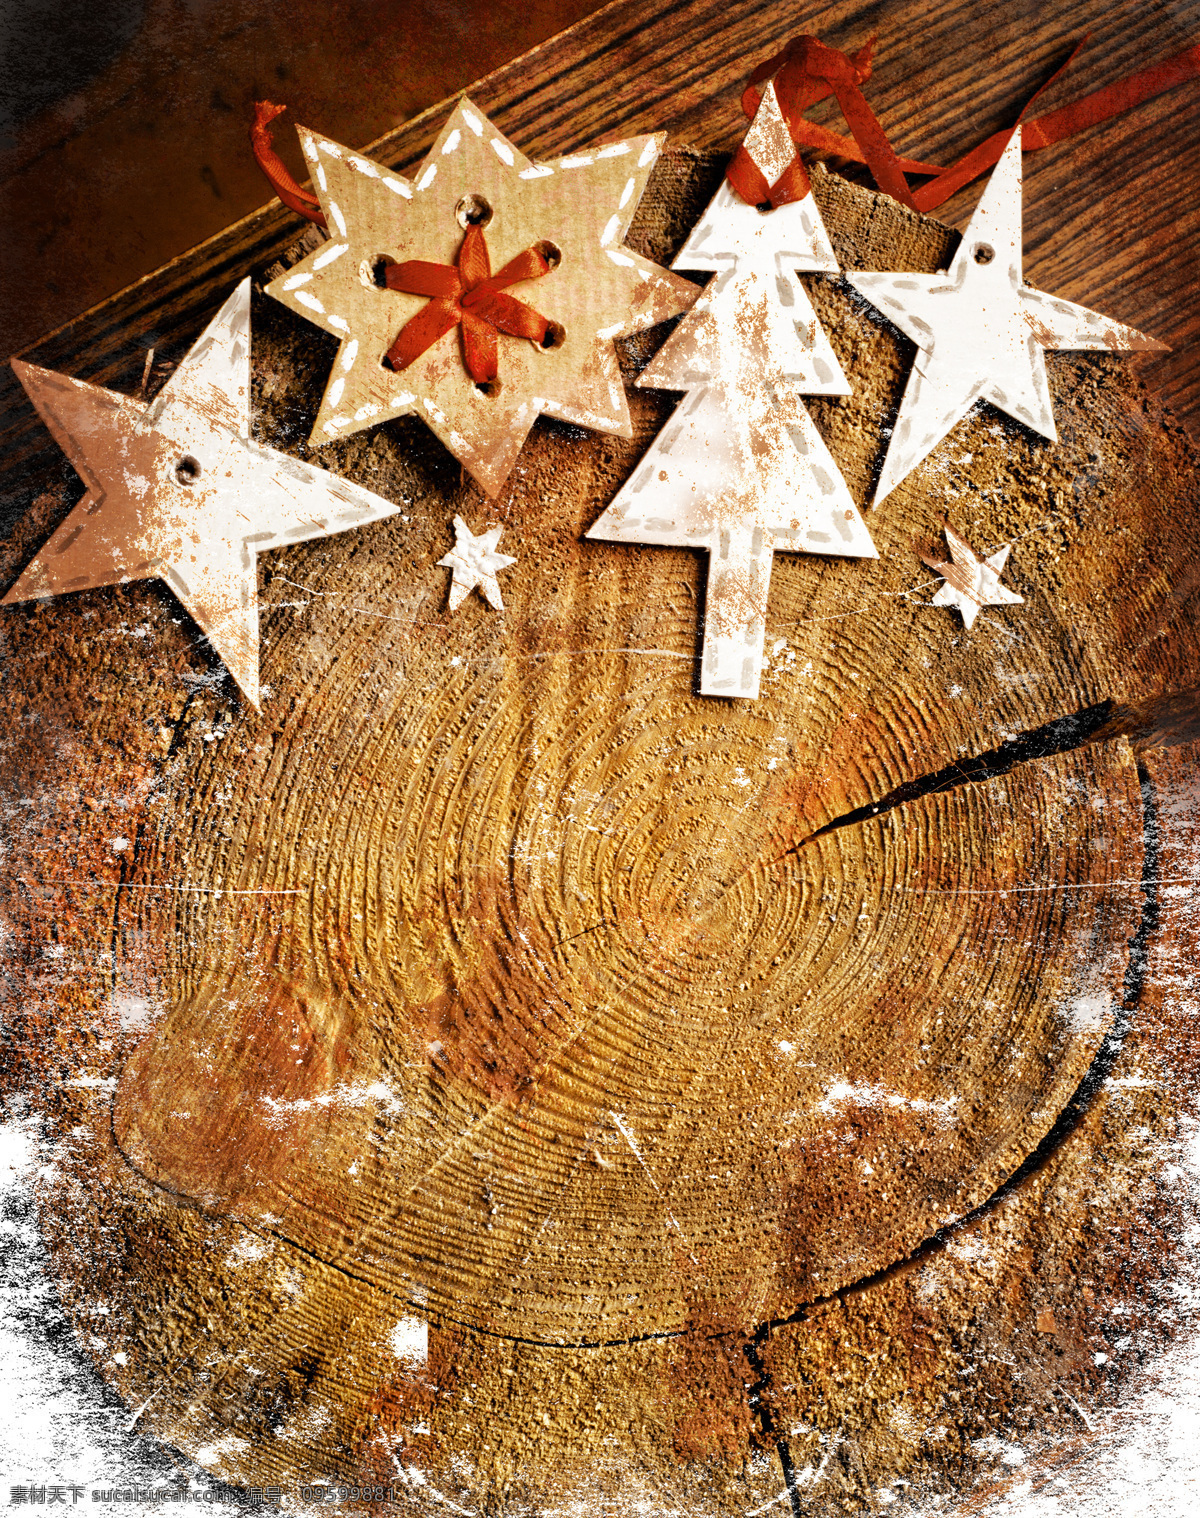 圣诞节 卡片 年轮 背景 圣诞节背景 新年背景 圣诞树 麋鹿 圣诞节贺卡 圣诞节卡片 底纹边框 底纹背景 圣诞节图片 生活百科